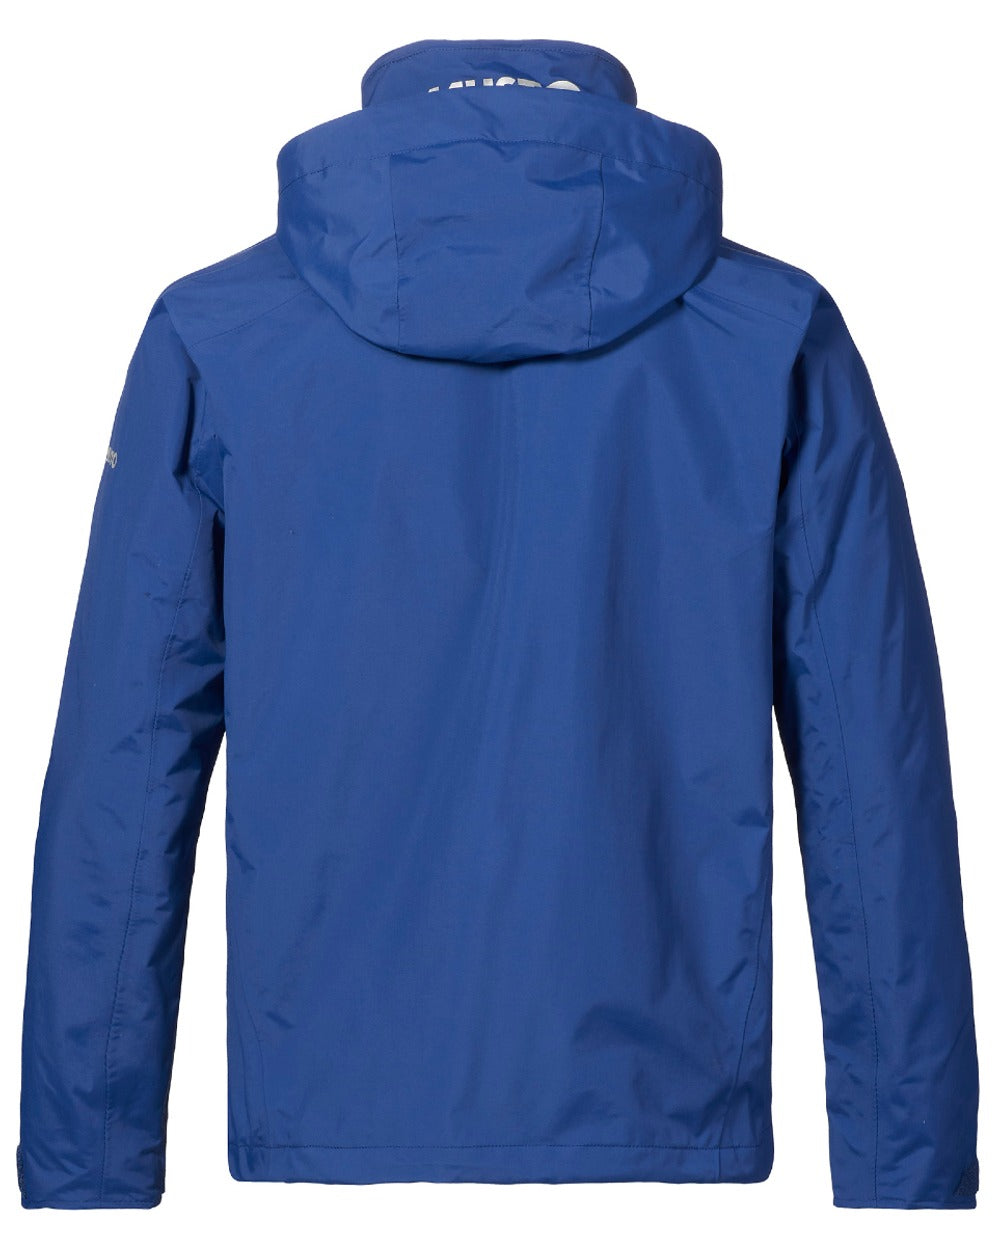 Musto Corsica Waterproof Jacket 2.0 in Dark Cobalt 